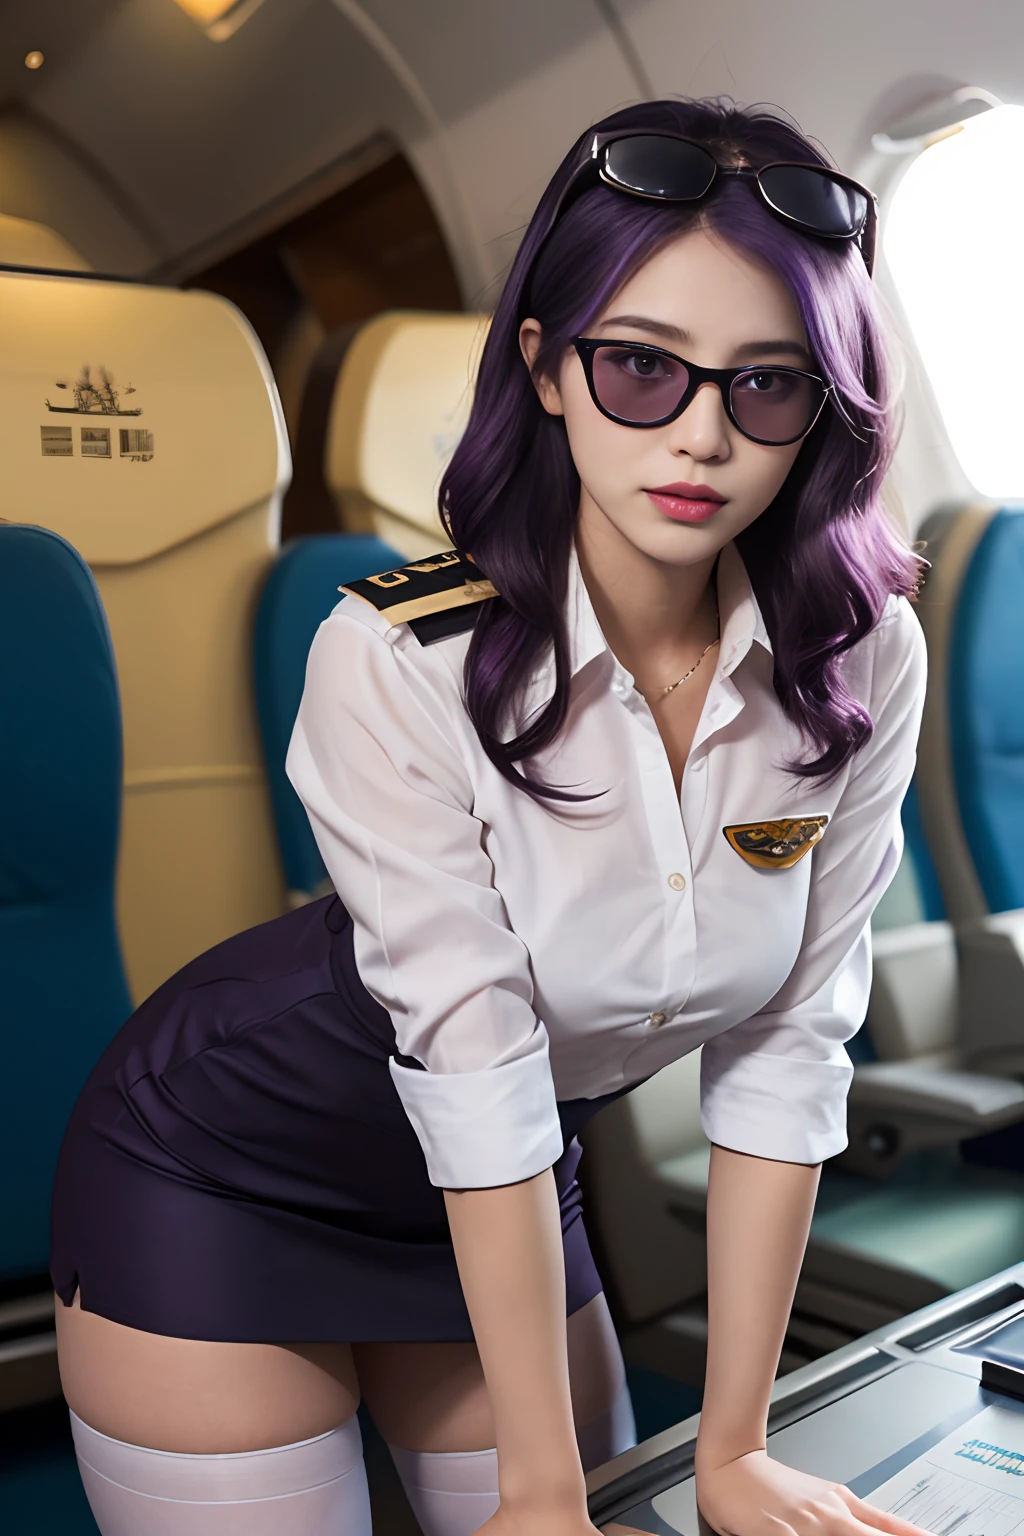 (最好的品質: 1.1), (實際的: 1.1), (攝影: 1.1), (高度細節: 1.1), (1位女士), 民航飛行員, 燕麦,白襯衫,短裙,黑色長襪,弯下腰,在飞机上,卡夫卡HKS,香港,紫色的眼睛, 紫色頭髮, 头上戴眼镜, 太陽眼鏡,